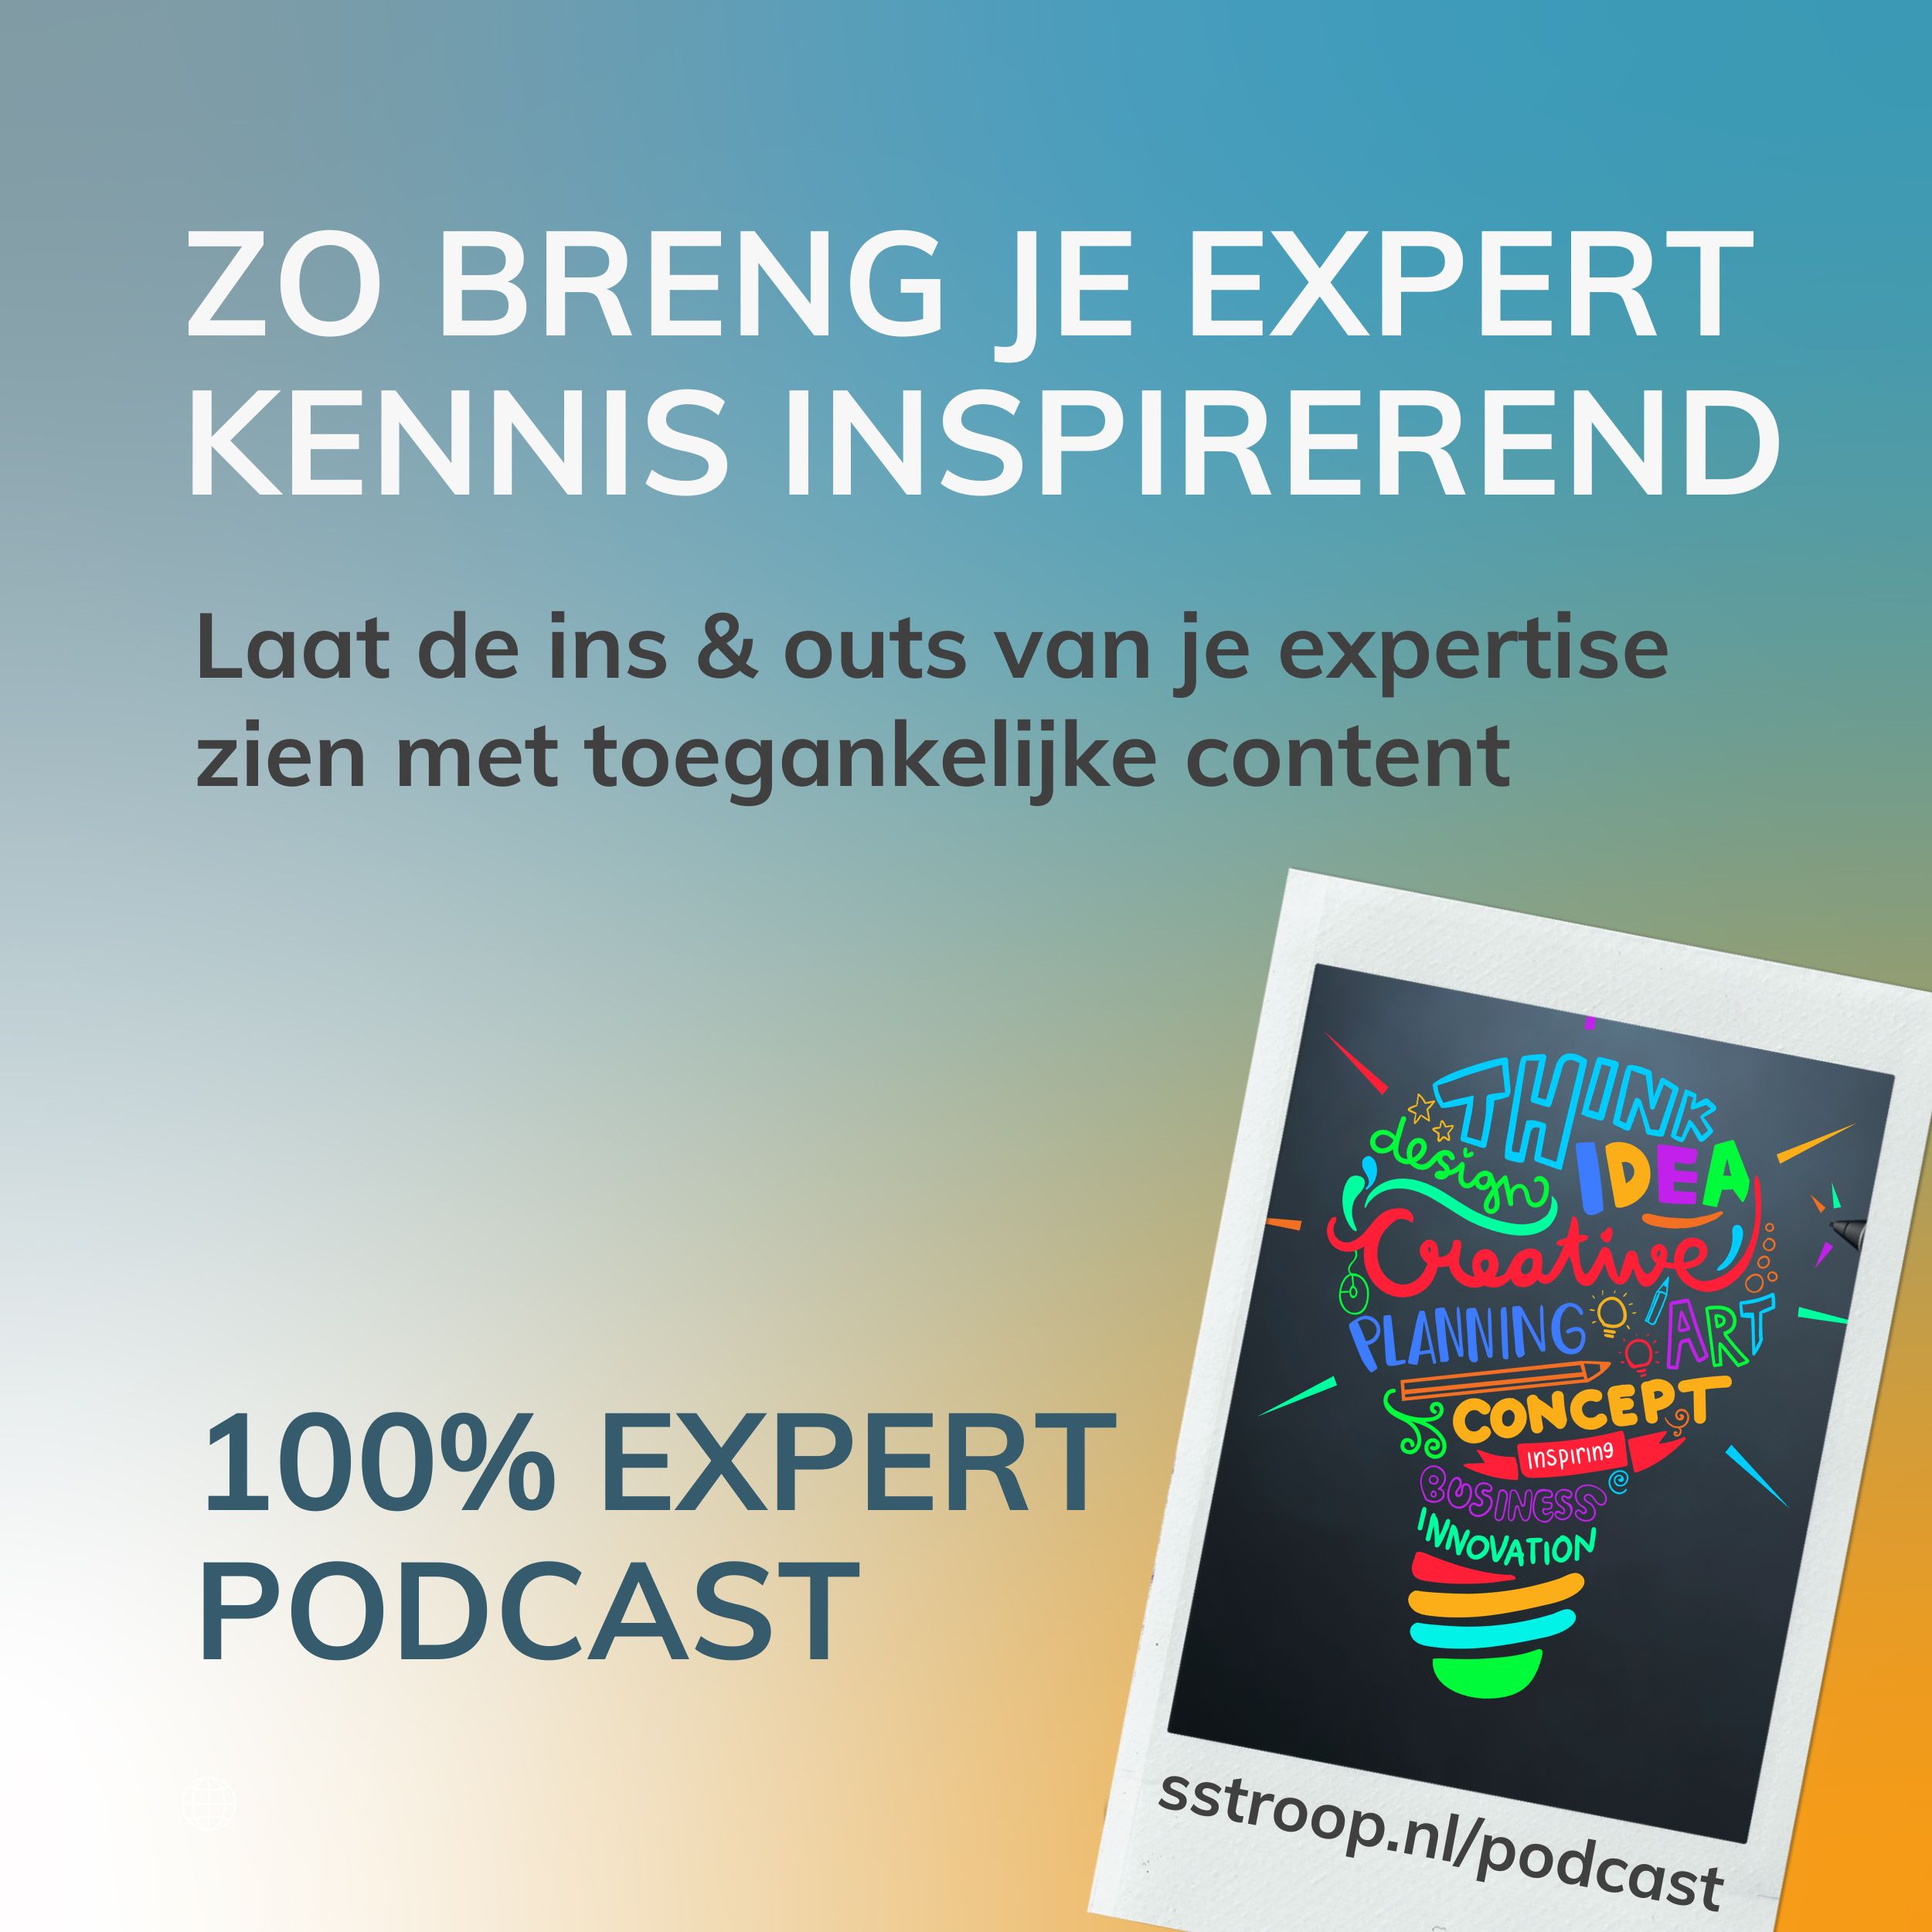 Artwork for podcast 100% Expert Podcast